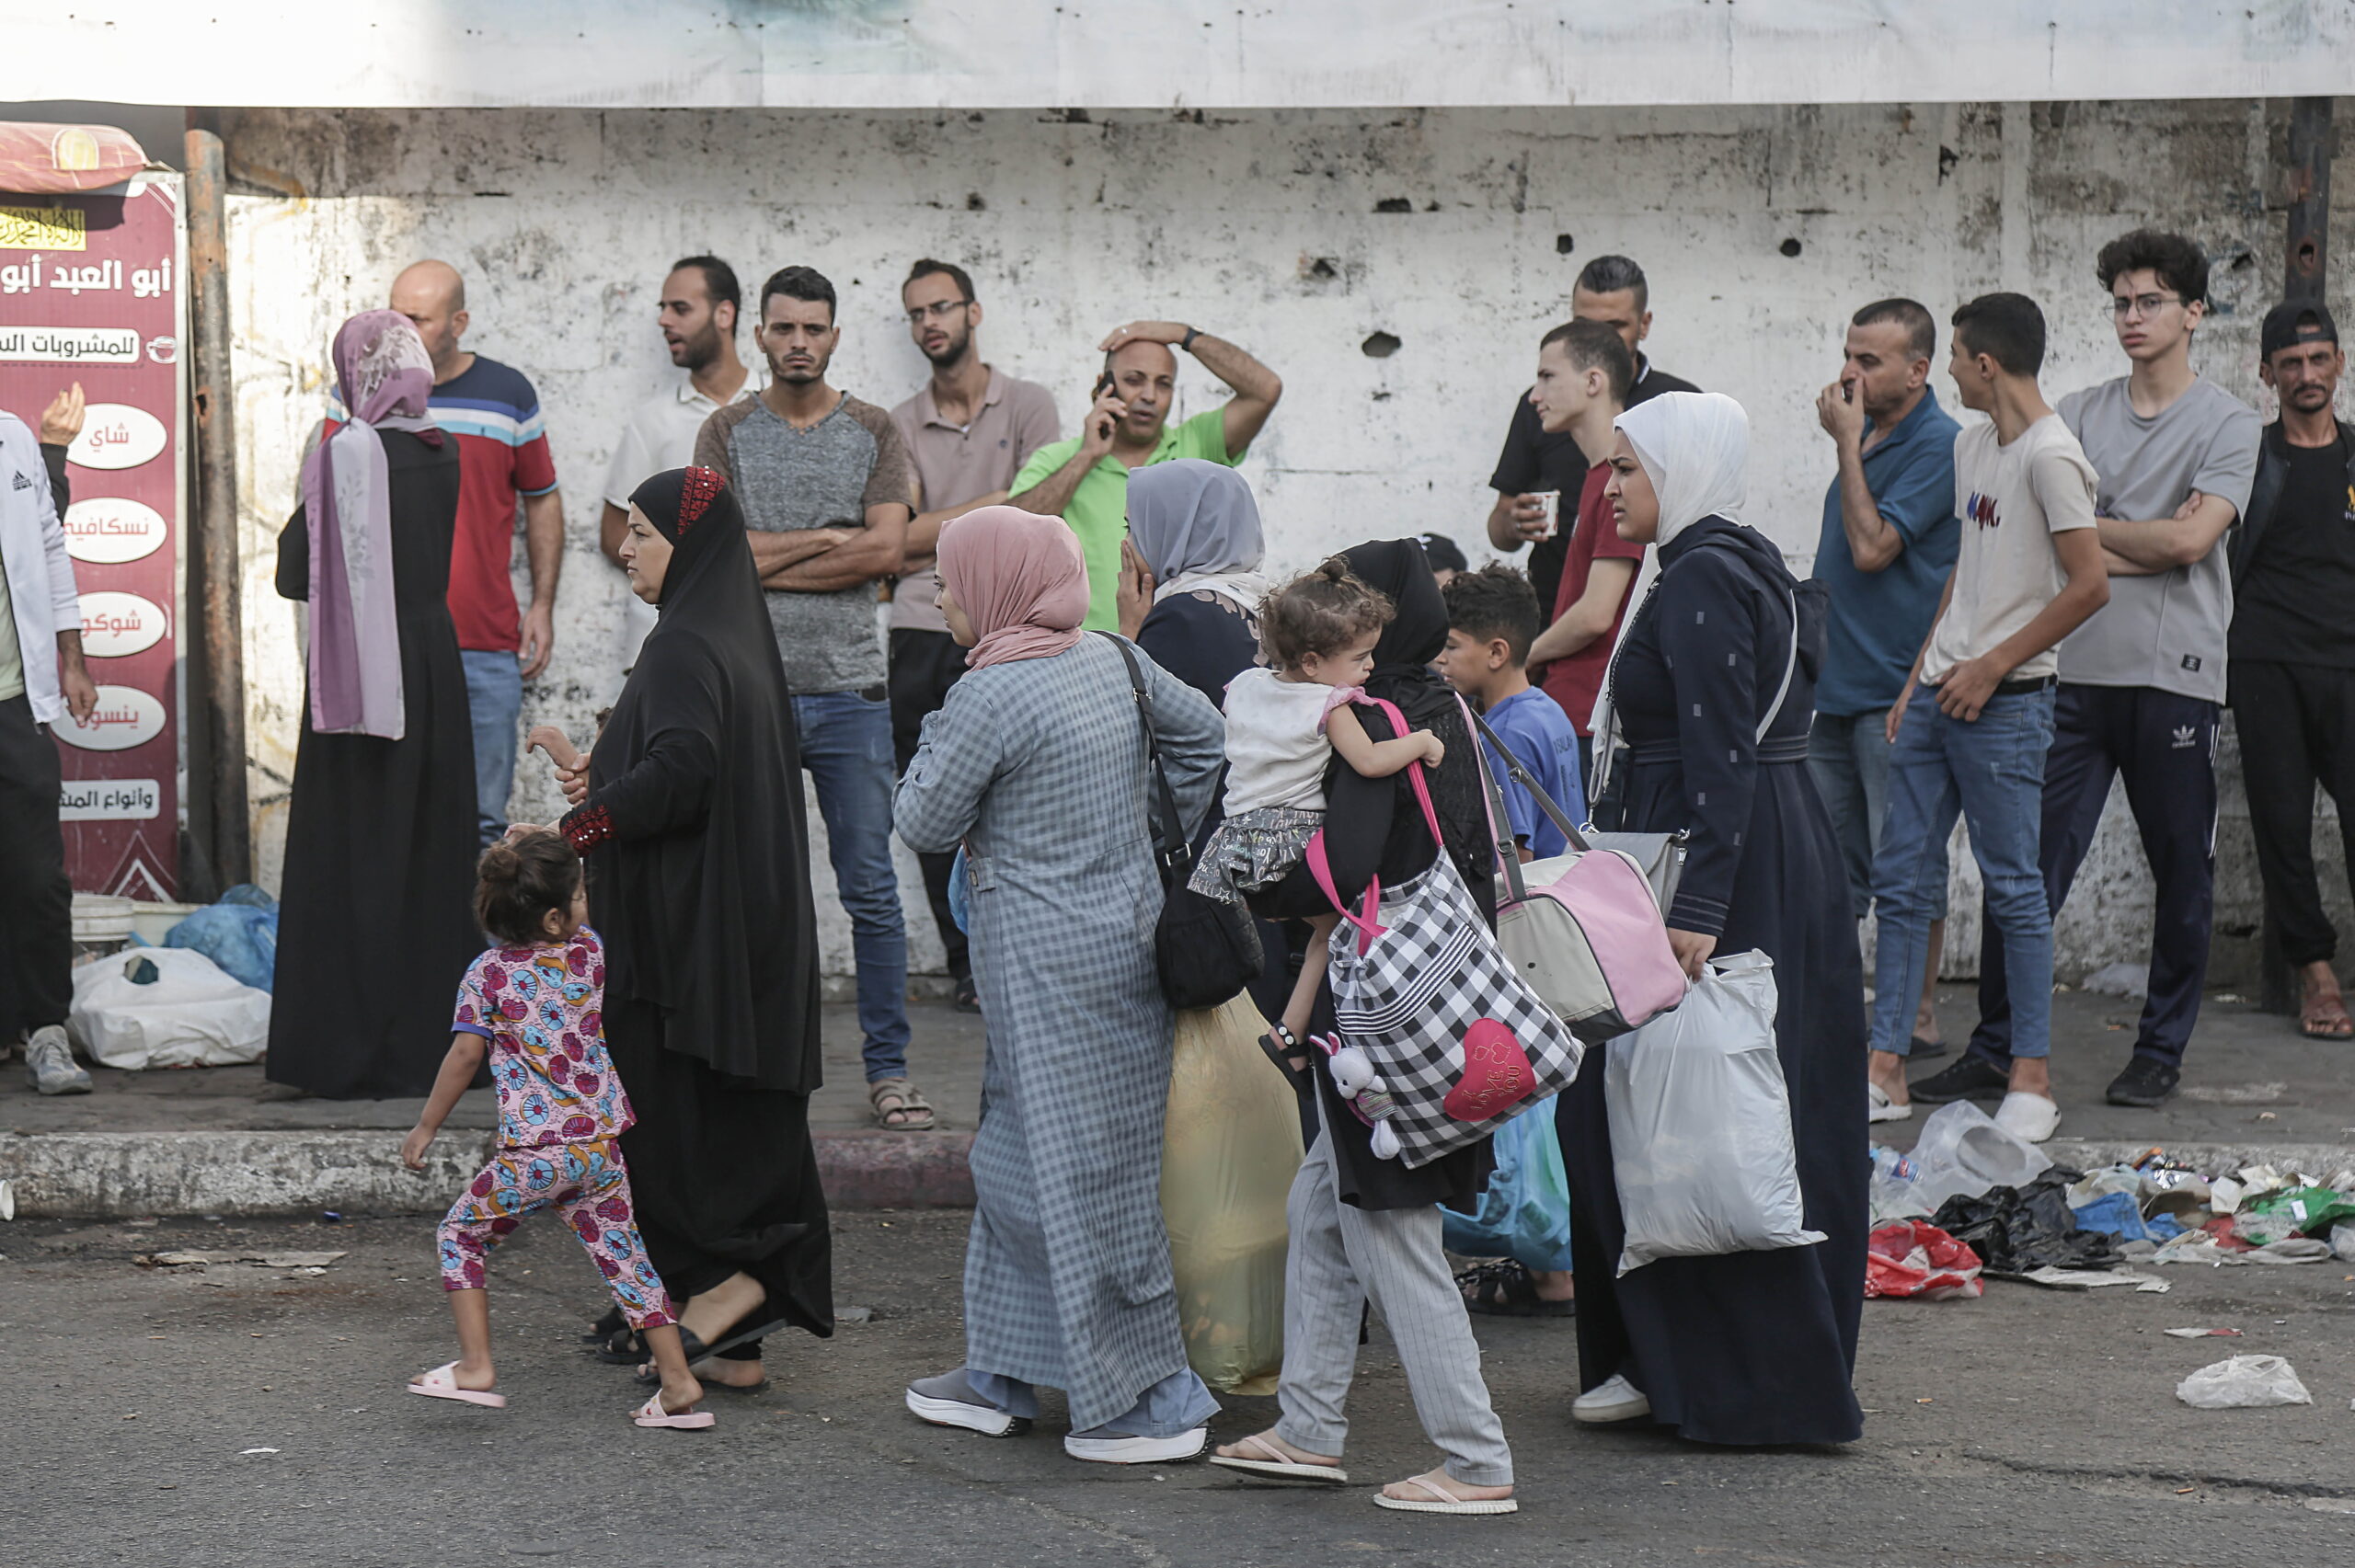 ΝΥΤ: Η βοήθεια στη Γάζα καθυστερεί καθώς οι συνομιλίες συνεχίζονται, λένε αξιωματούχοι